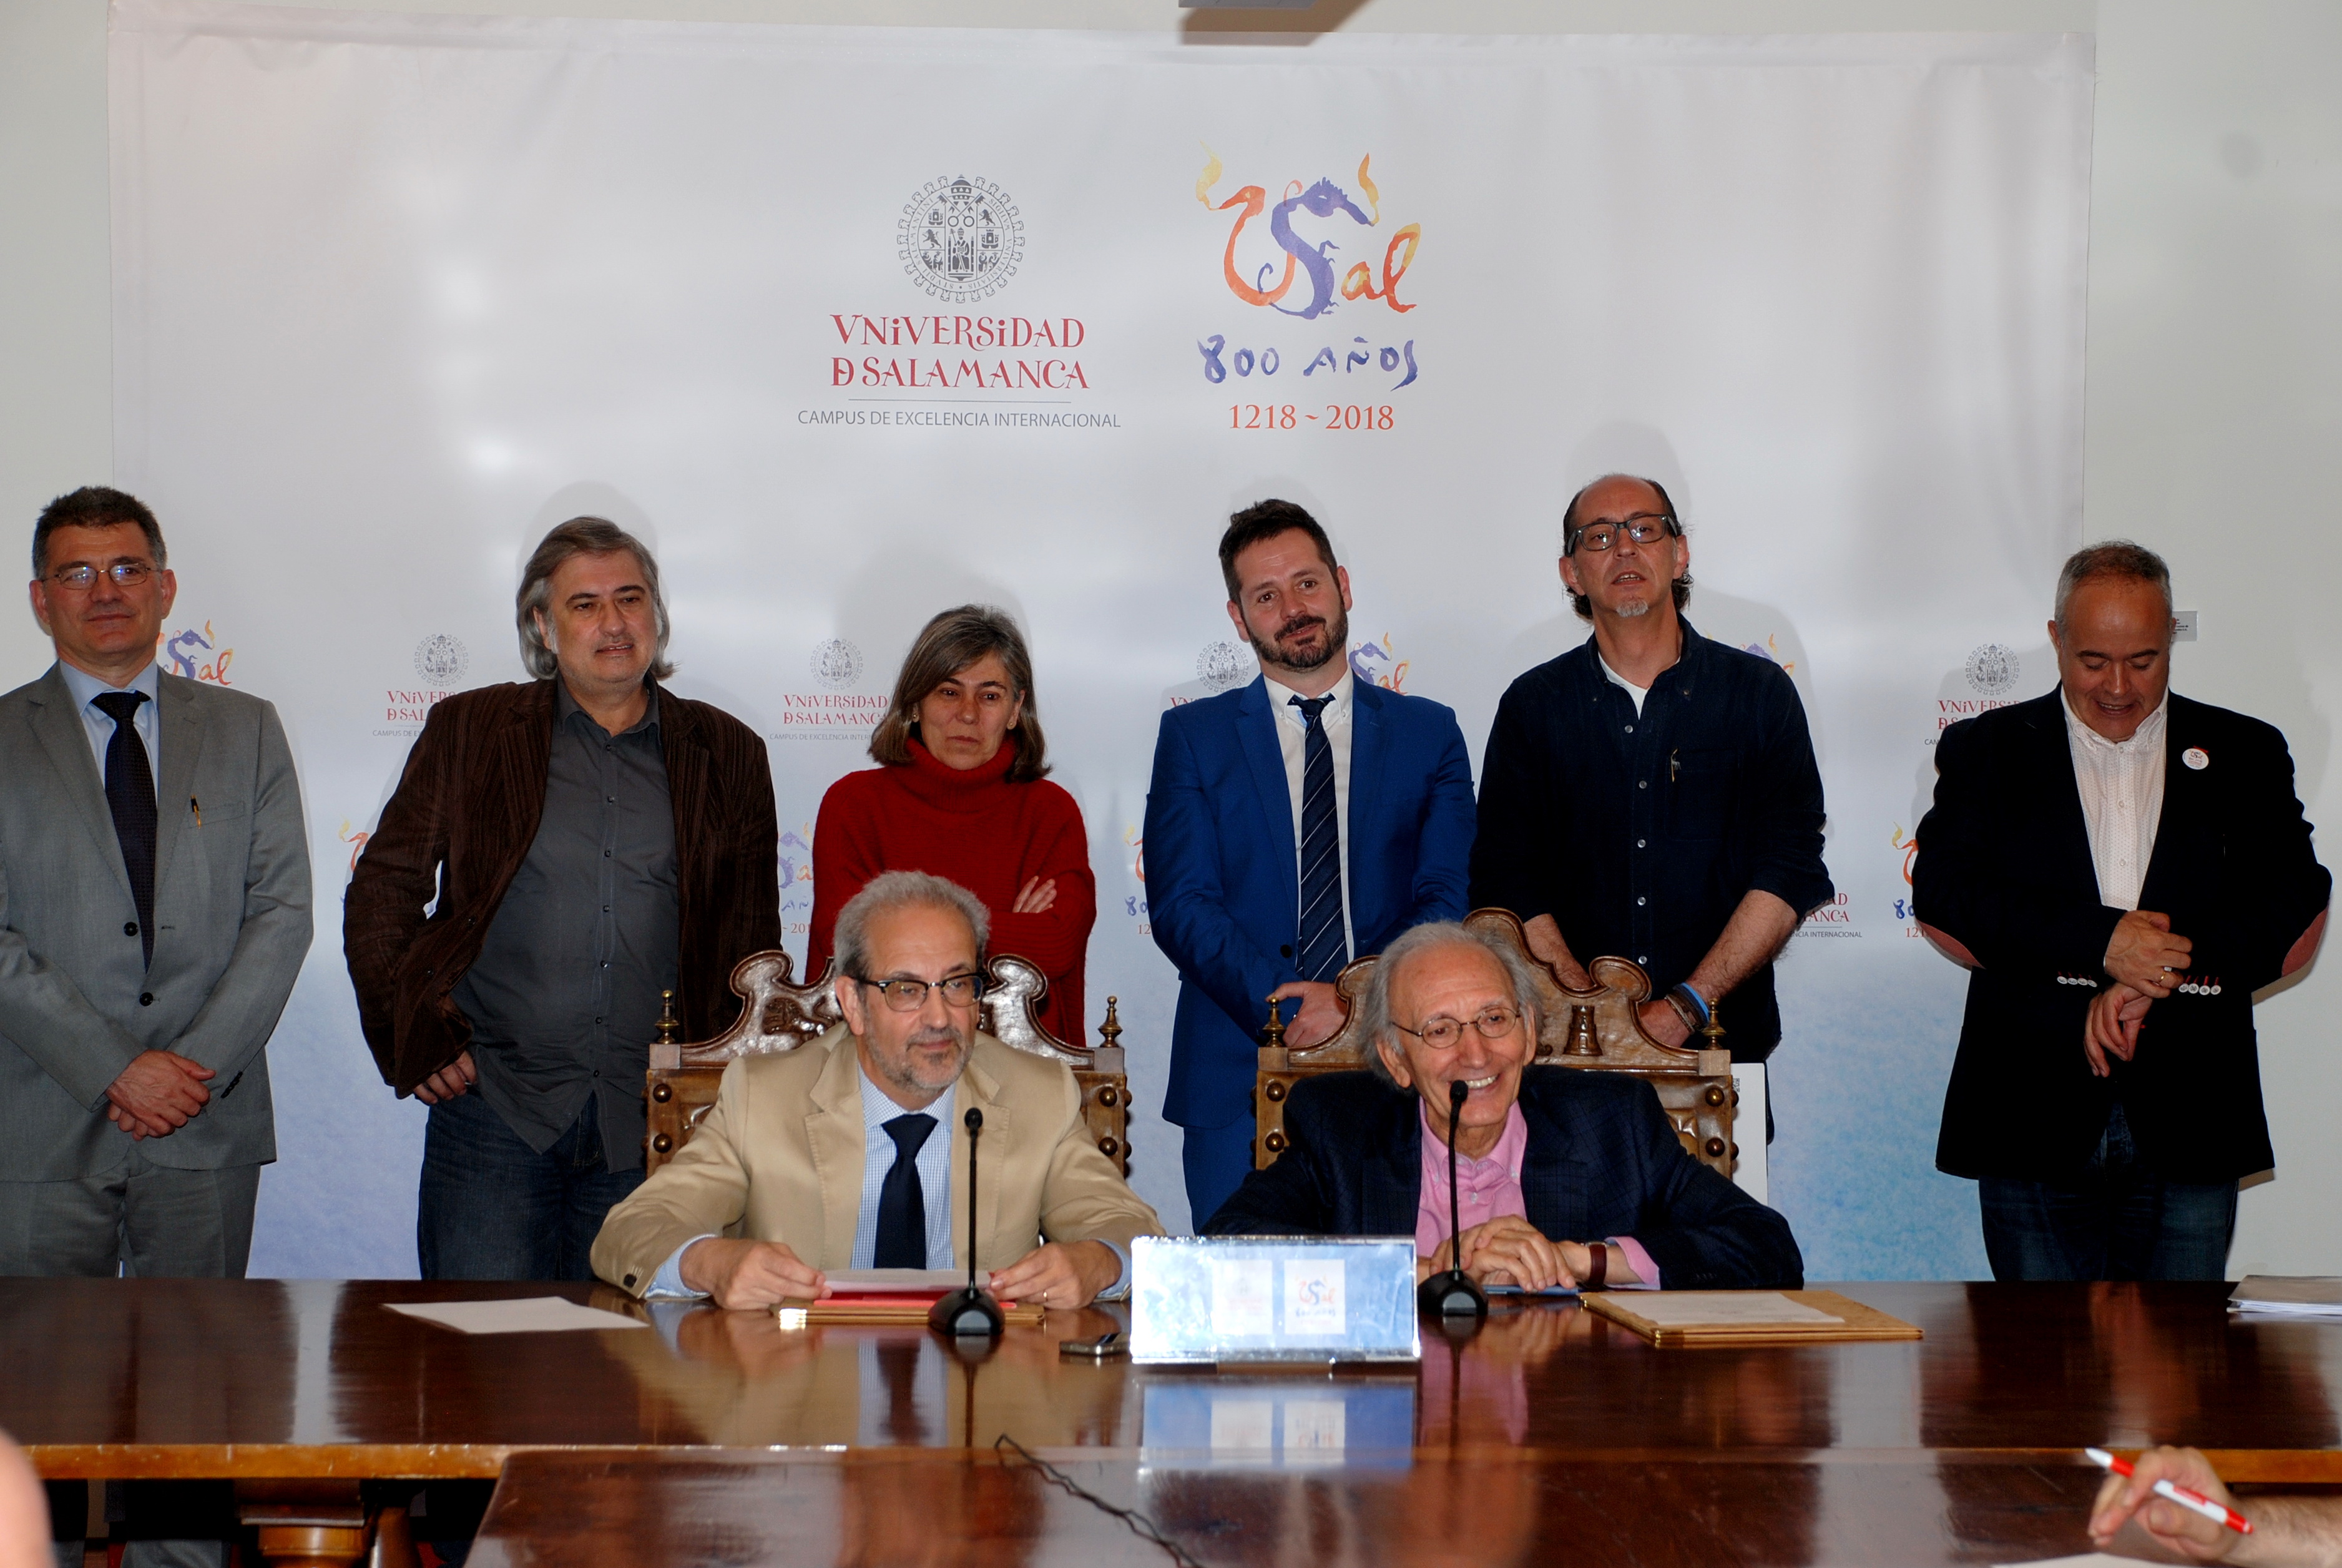 La Universidad de Salamanca y la Academia de las Artes Escénicas de España suscriben un convenio de colaboración para crear un curso internacional de verano de teatro